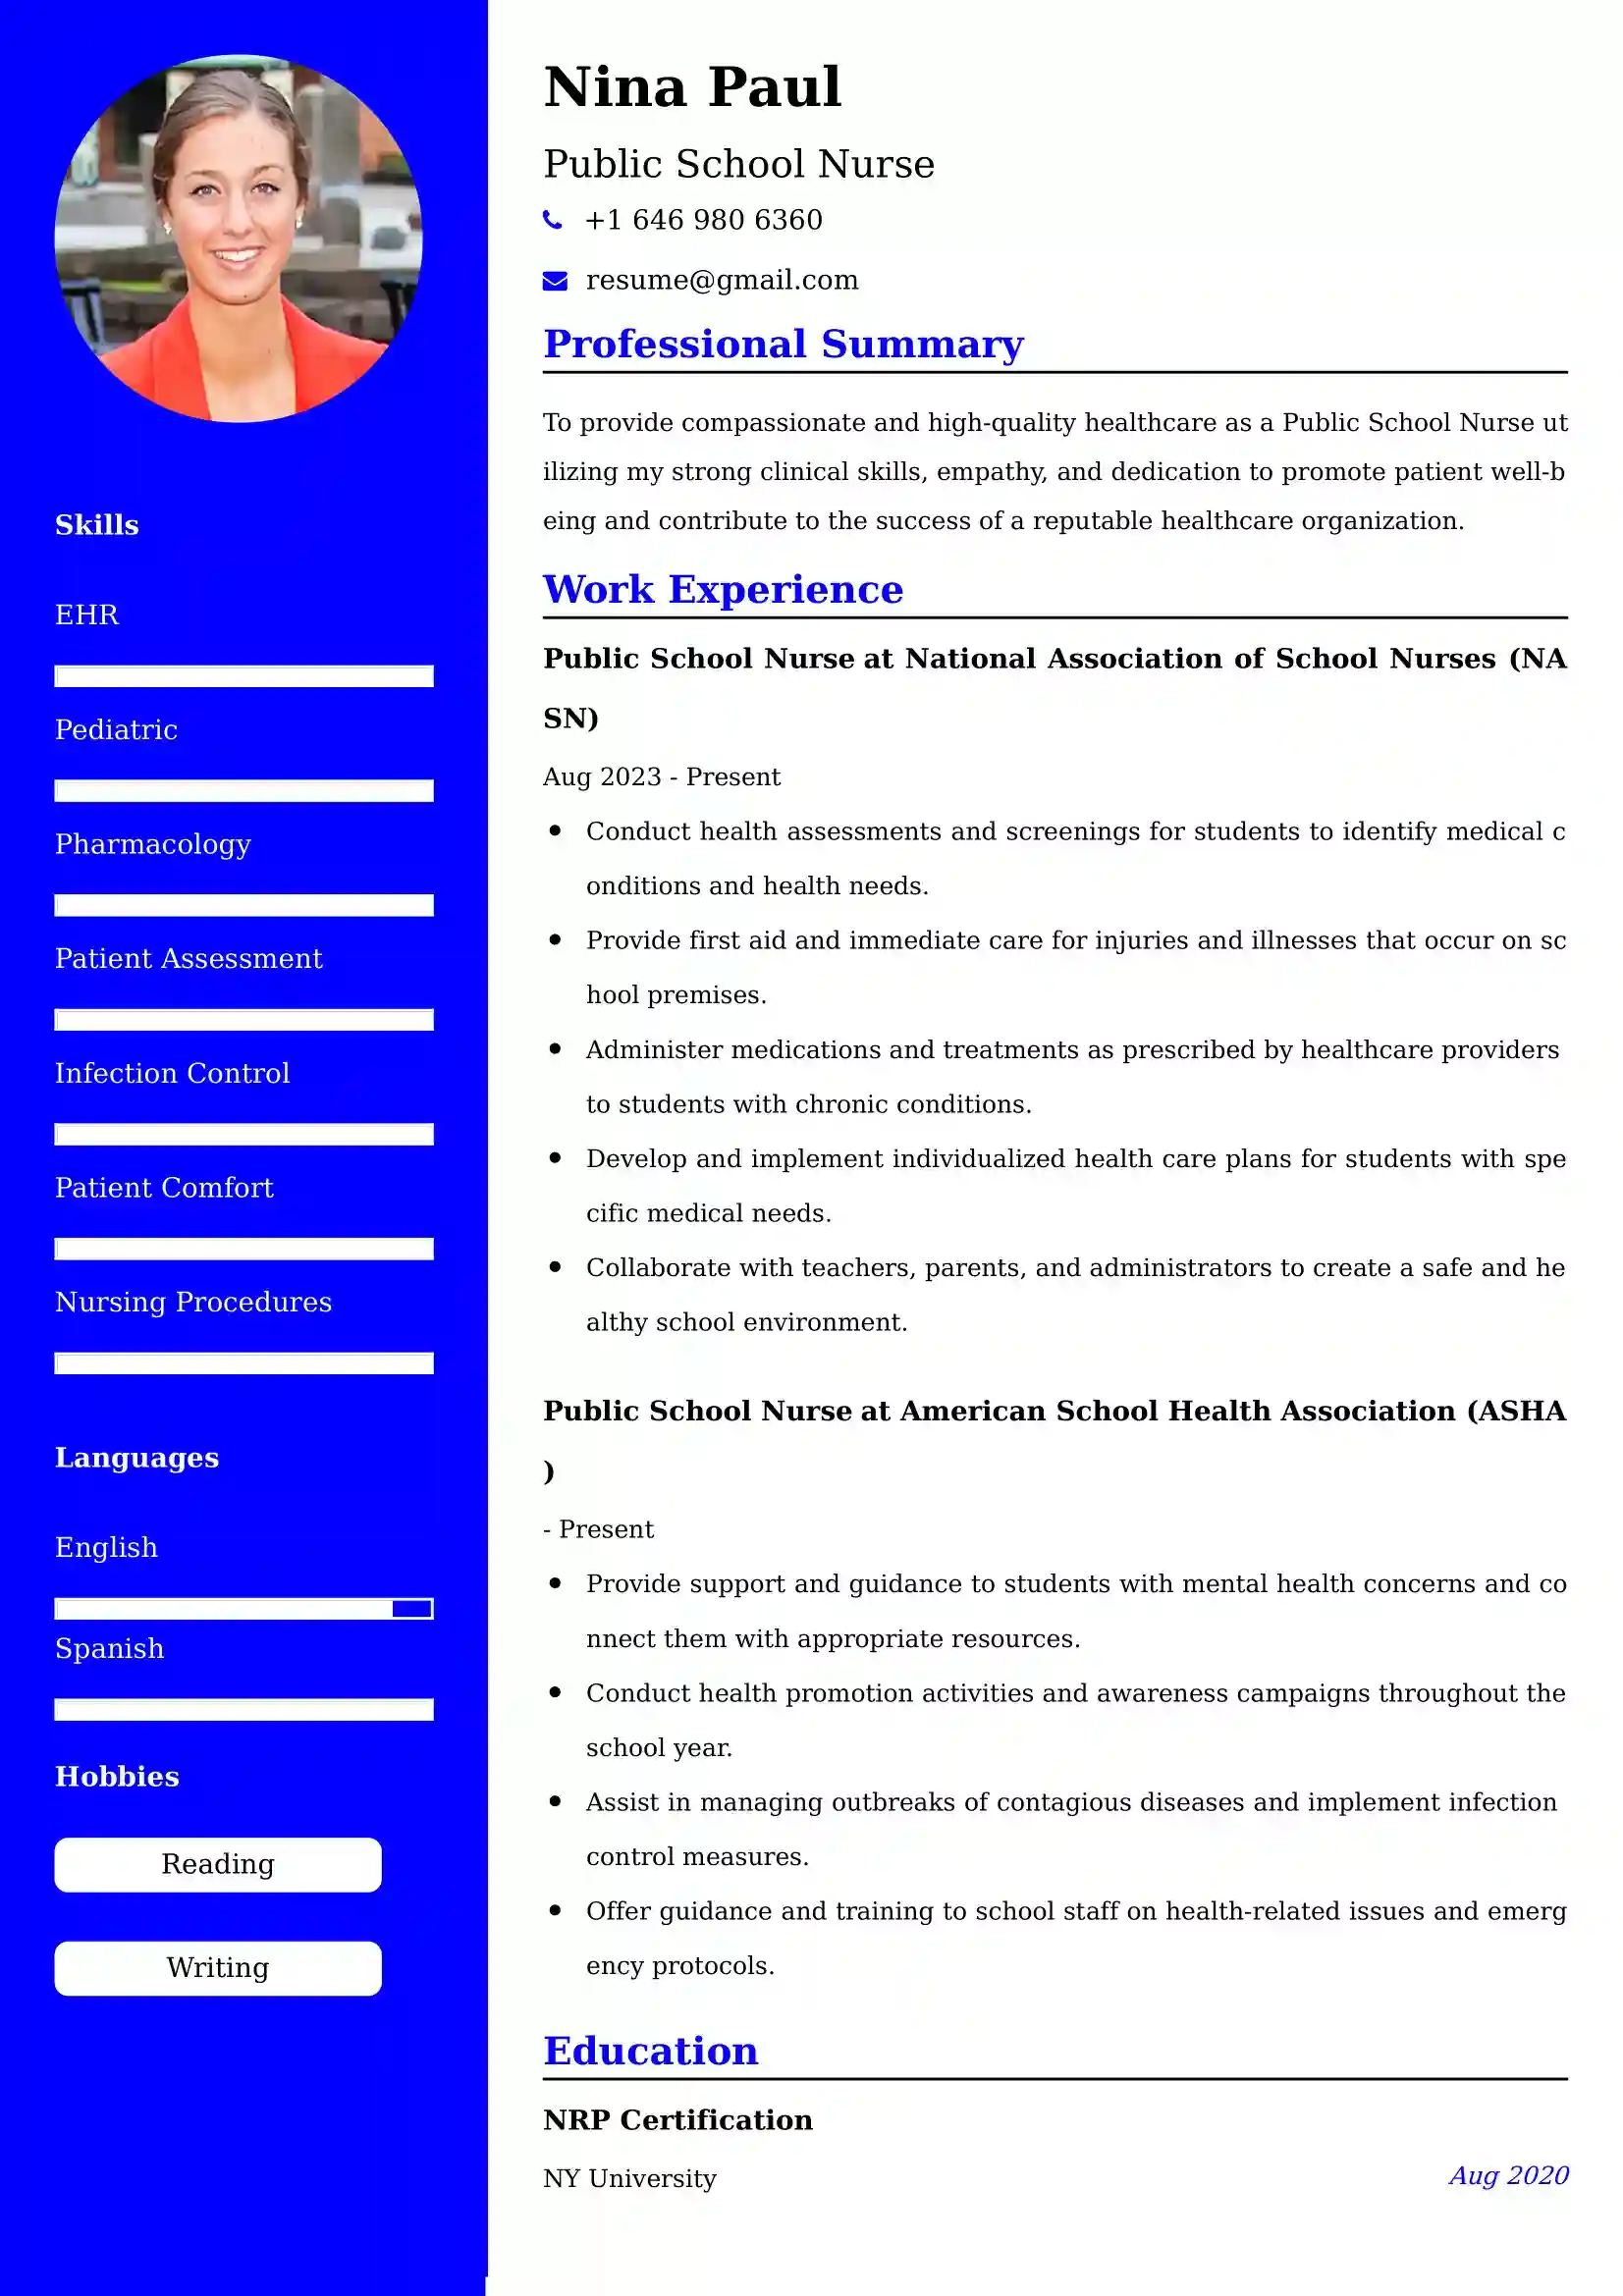 Public School Nurse CV Examples - US Format